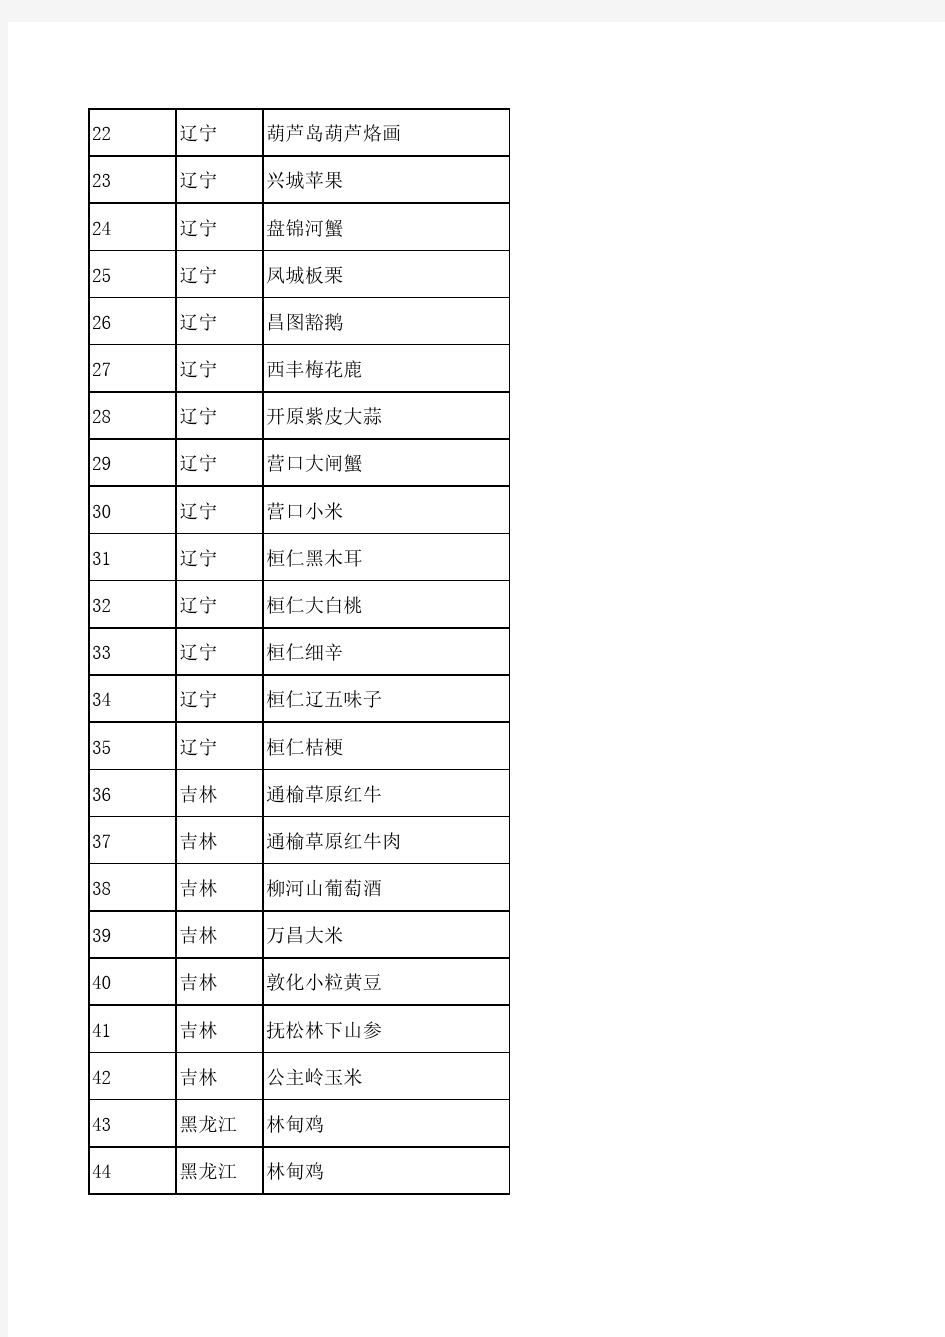 中国地理标志商标名录(截止到2012.12.31)